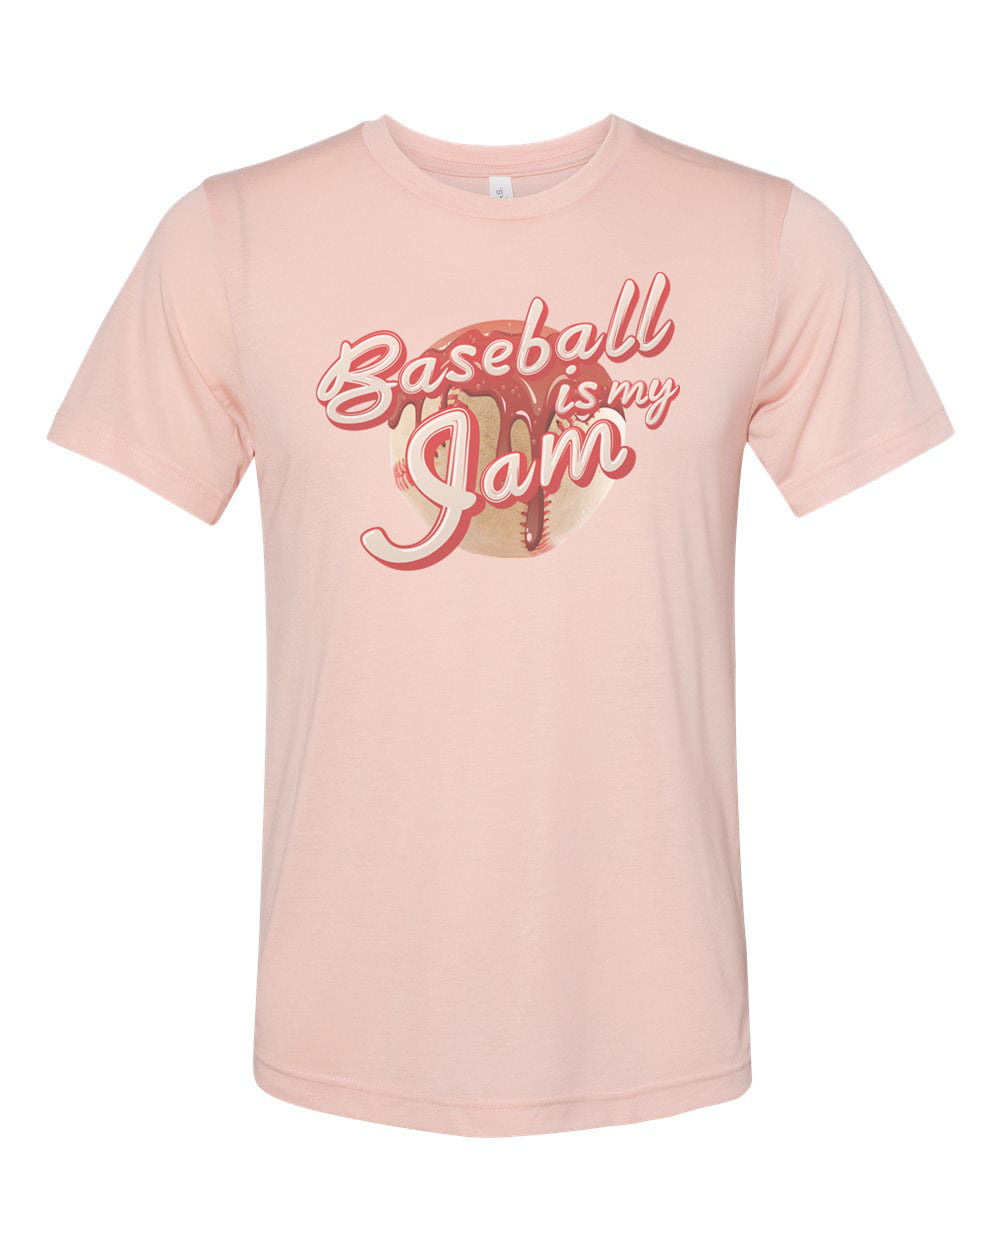 Baseball Shirt, Baseball Is My Jam, Baseball Gift, Unisex Fit, Funny  Baseball Shirt, Gift For Him, Sports Shirt, Baseball T-shirt, Dad Gift,  Peach